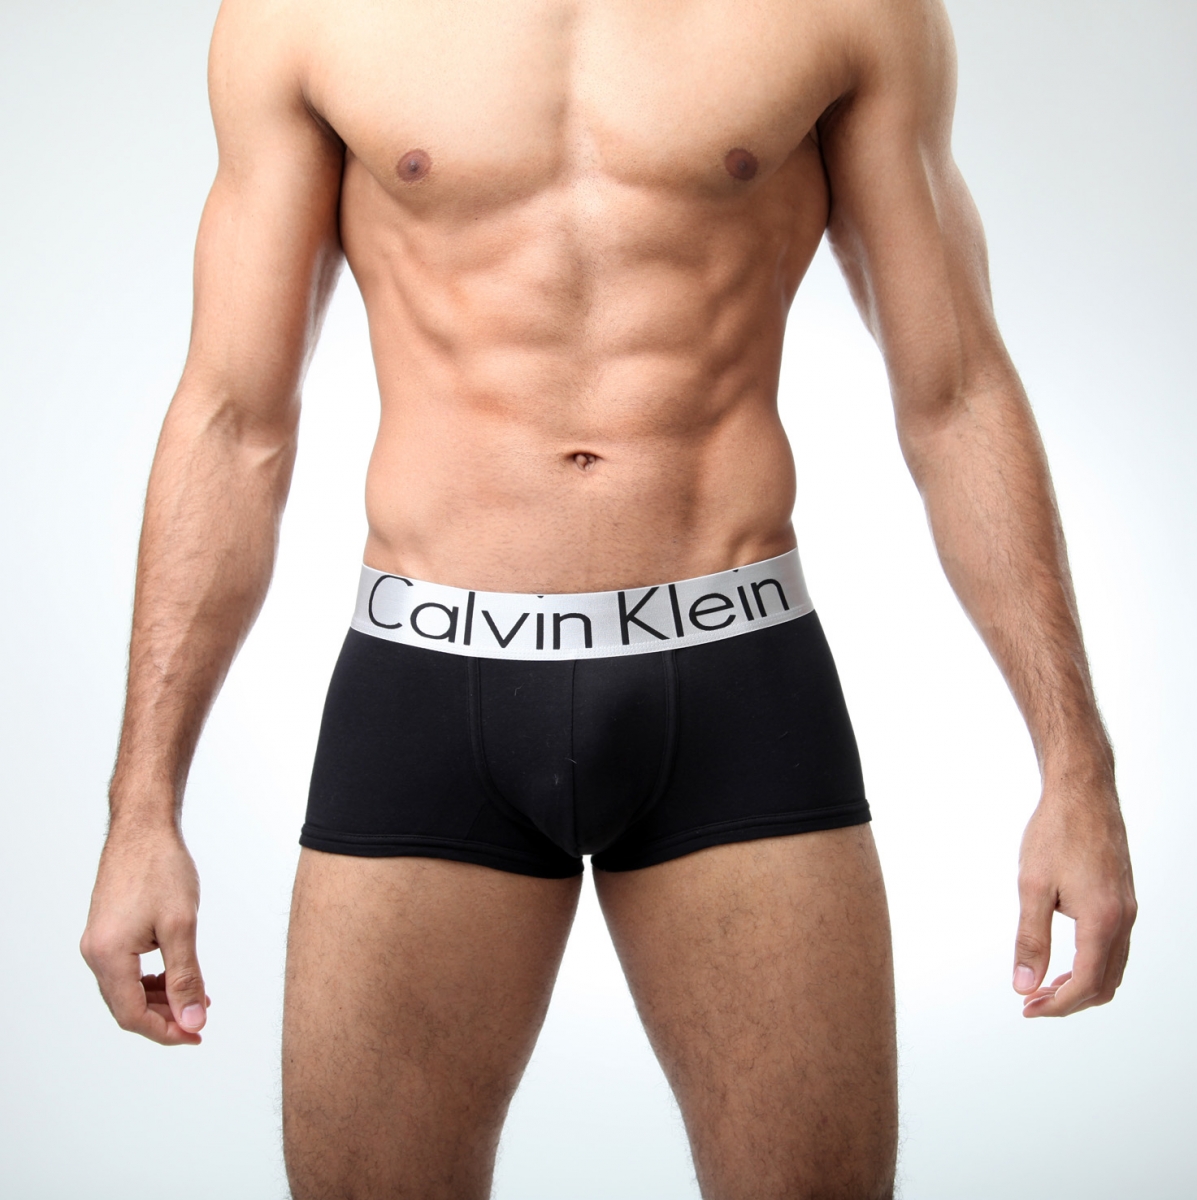 Мужские трусы Calvin Klein – наилучший выбор нижнего белья